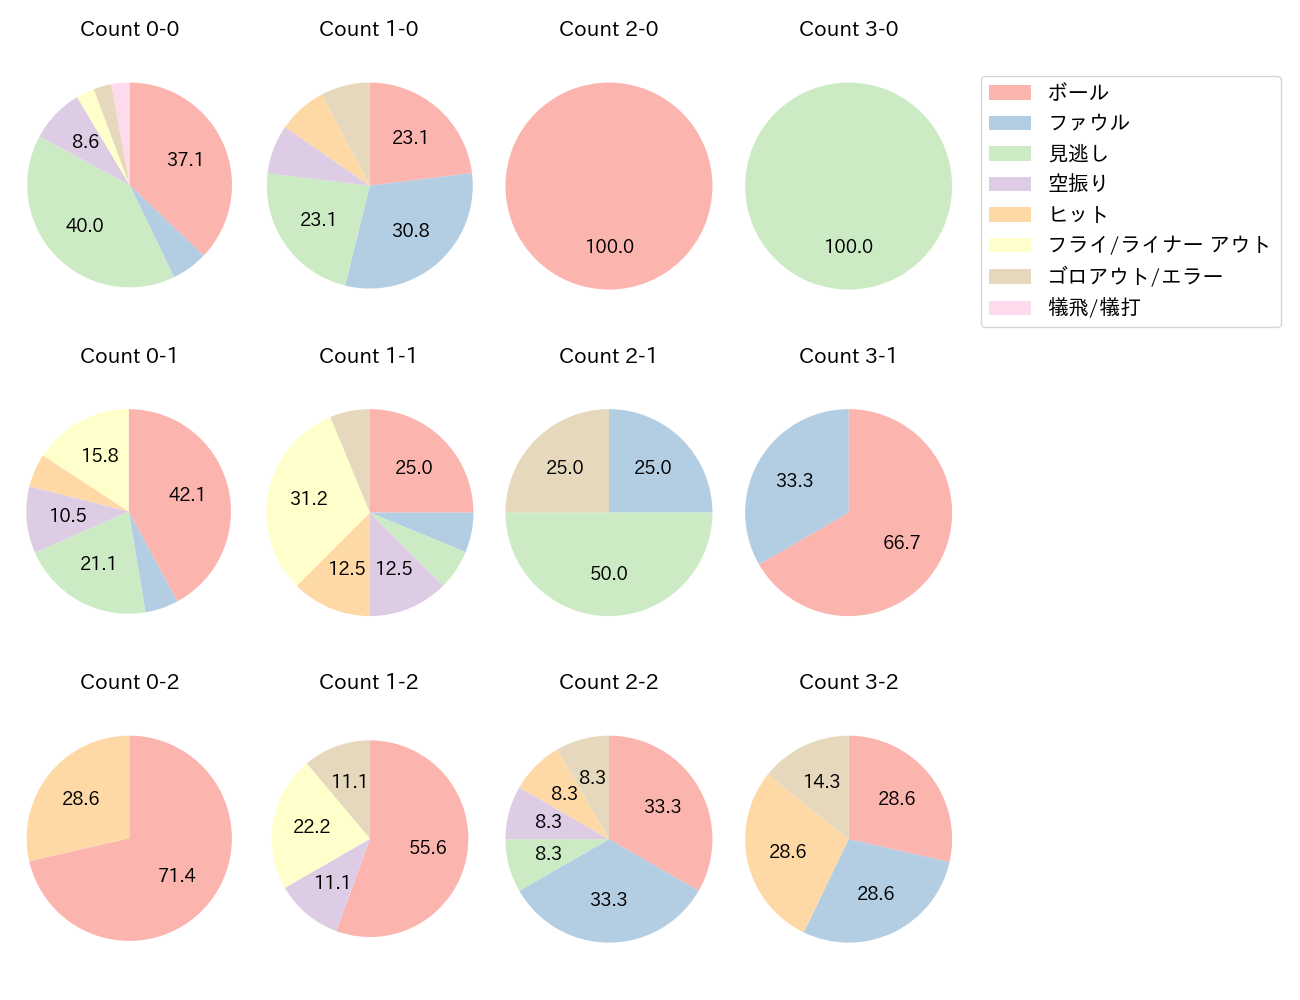 佐藤 都志也の球数分布(2021年9月)